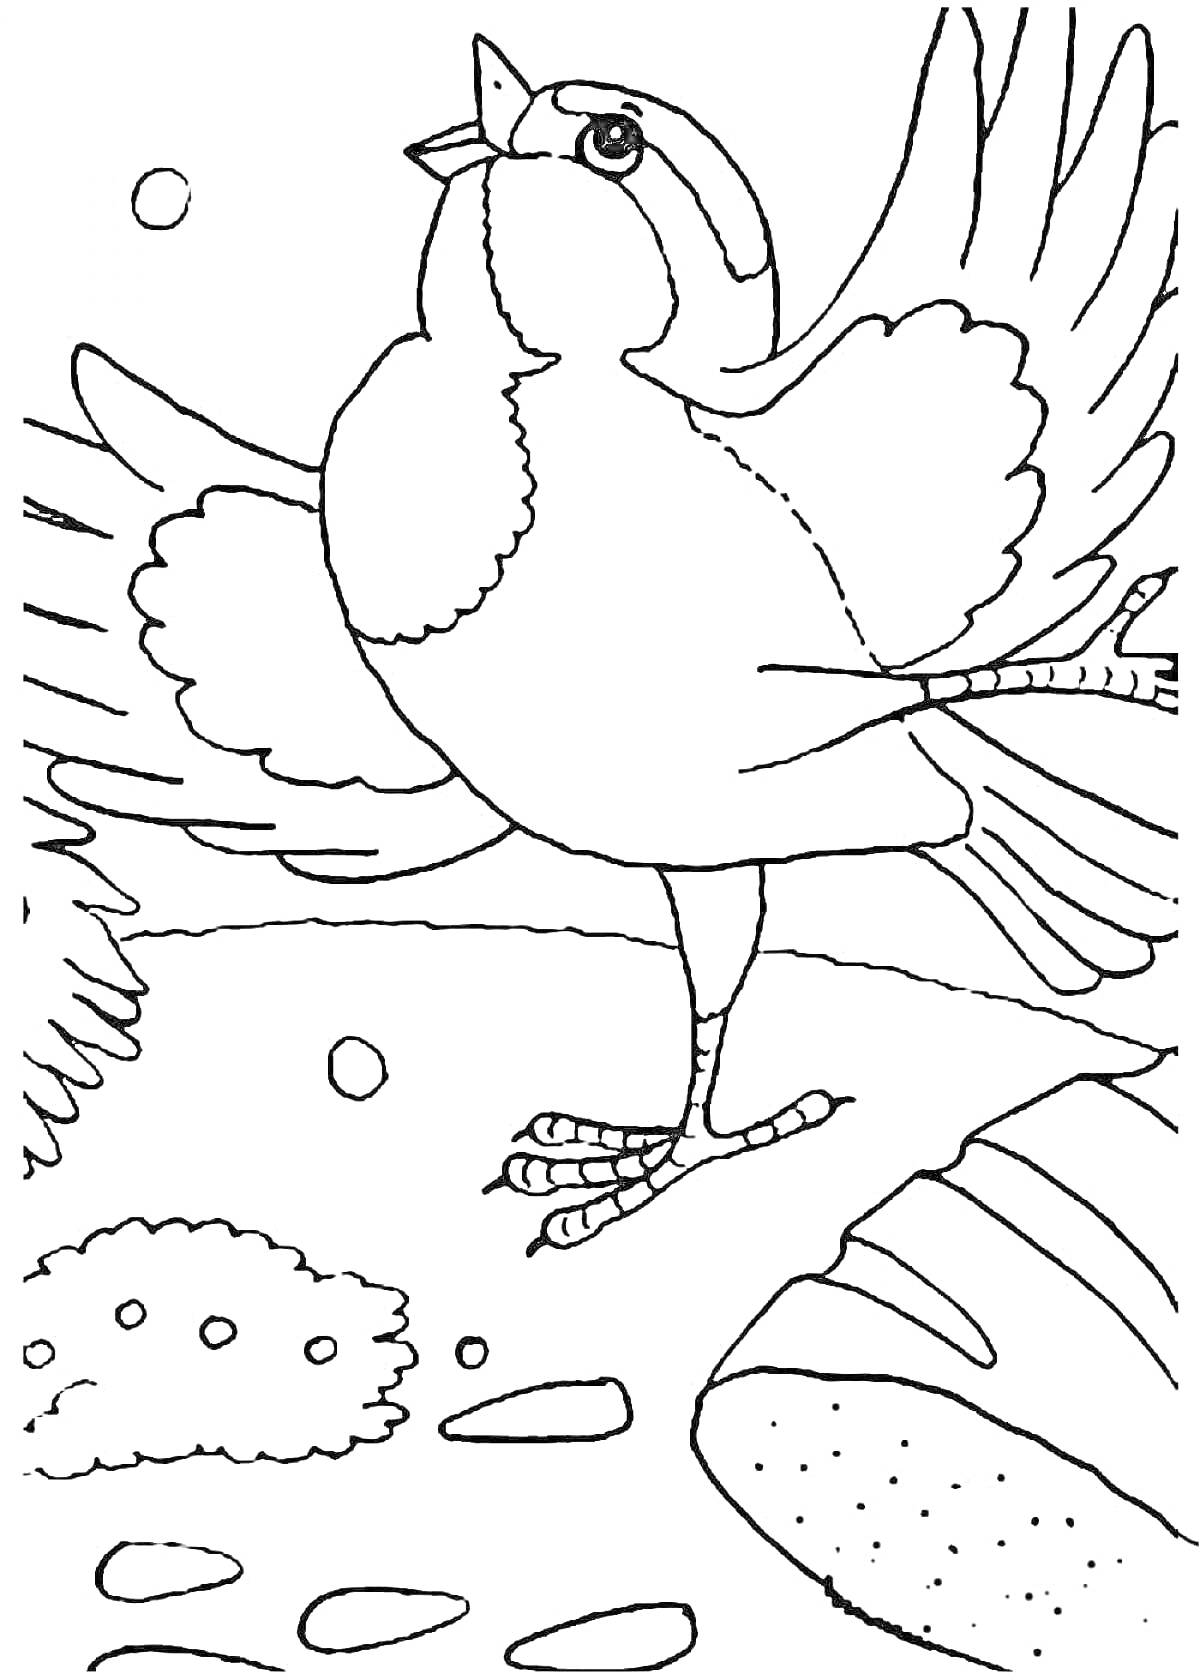 Раскраска Птица с растрепанными перьями на фоне природы с деревьями, кустами и камнями